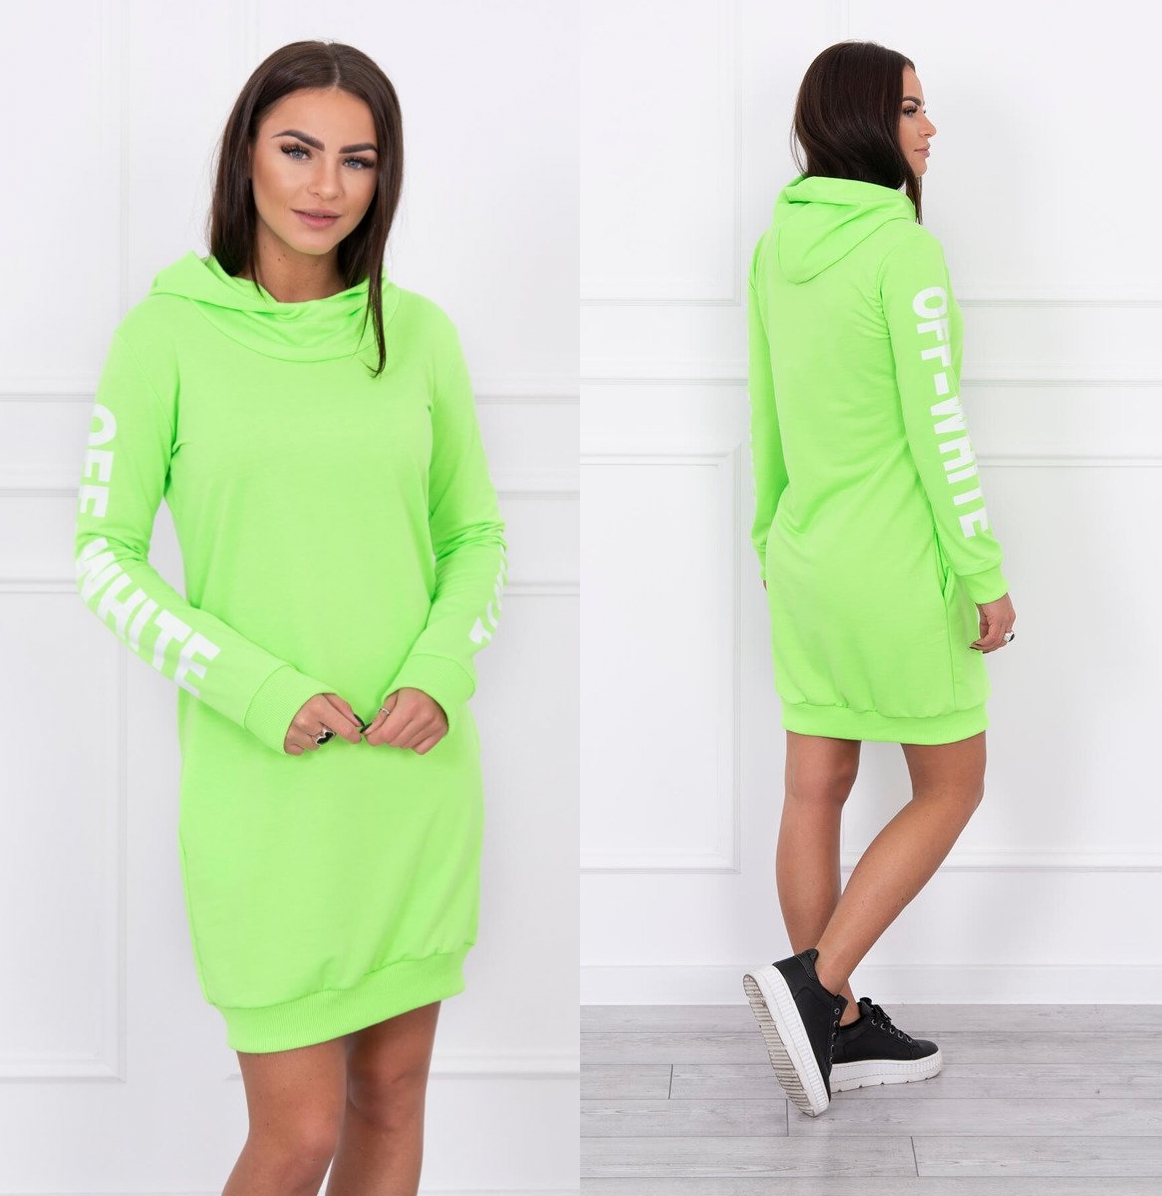 Sportovní šaty s kapucí Anna neonově zelené Velikost: Univerzální